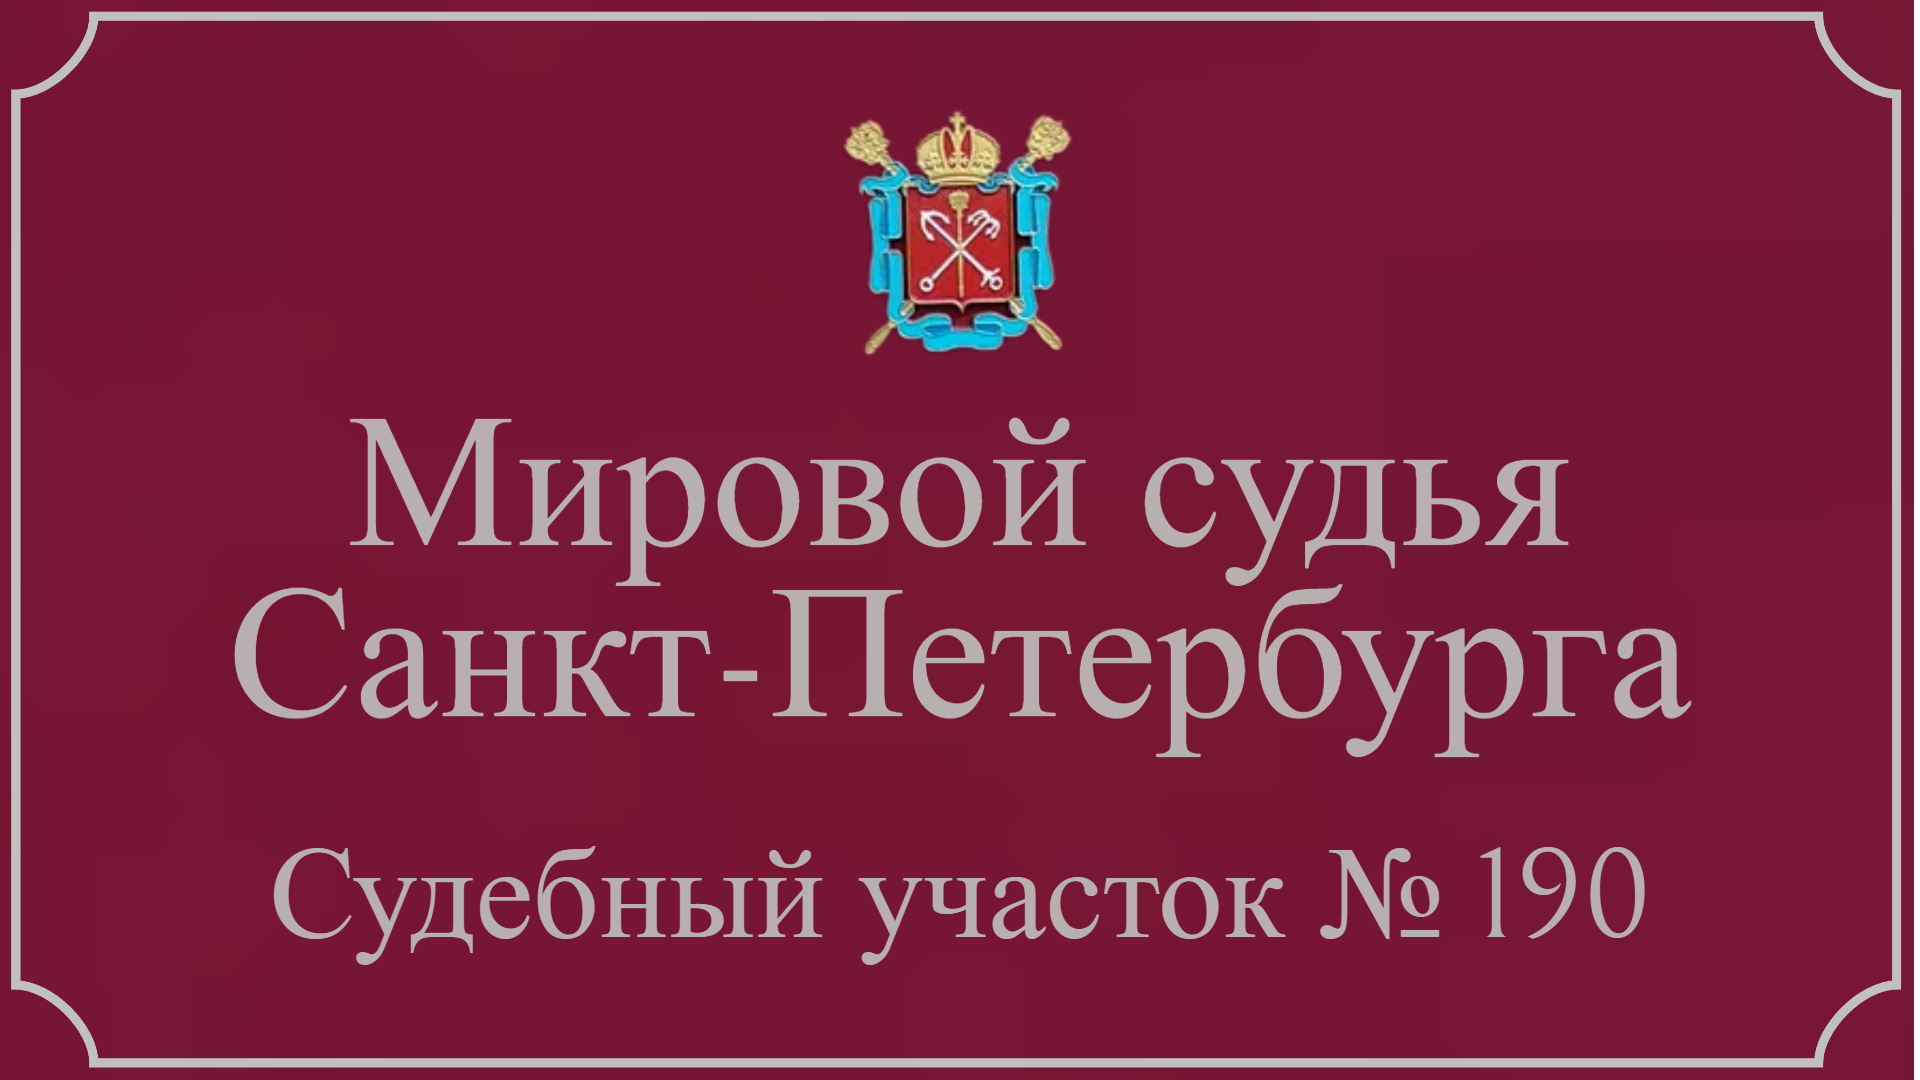 Информация по 190 судебному участку в Санкт-Петербурге.